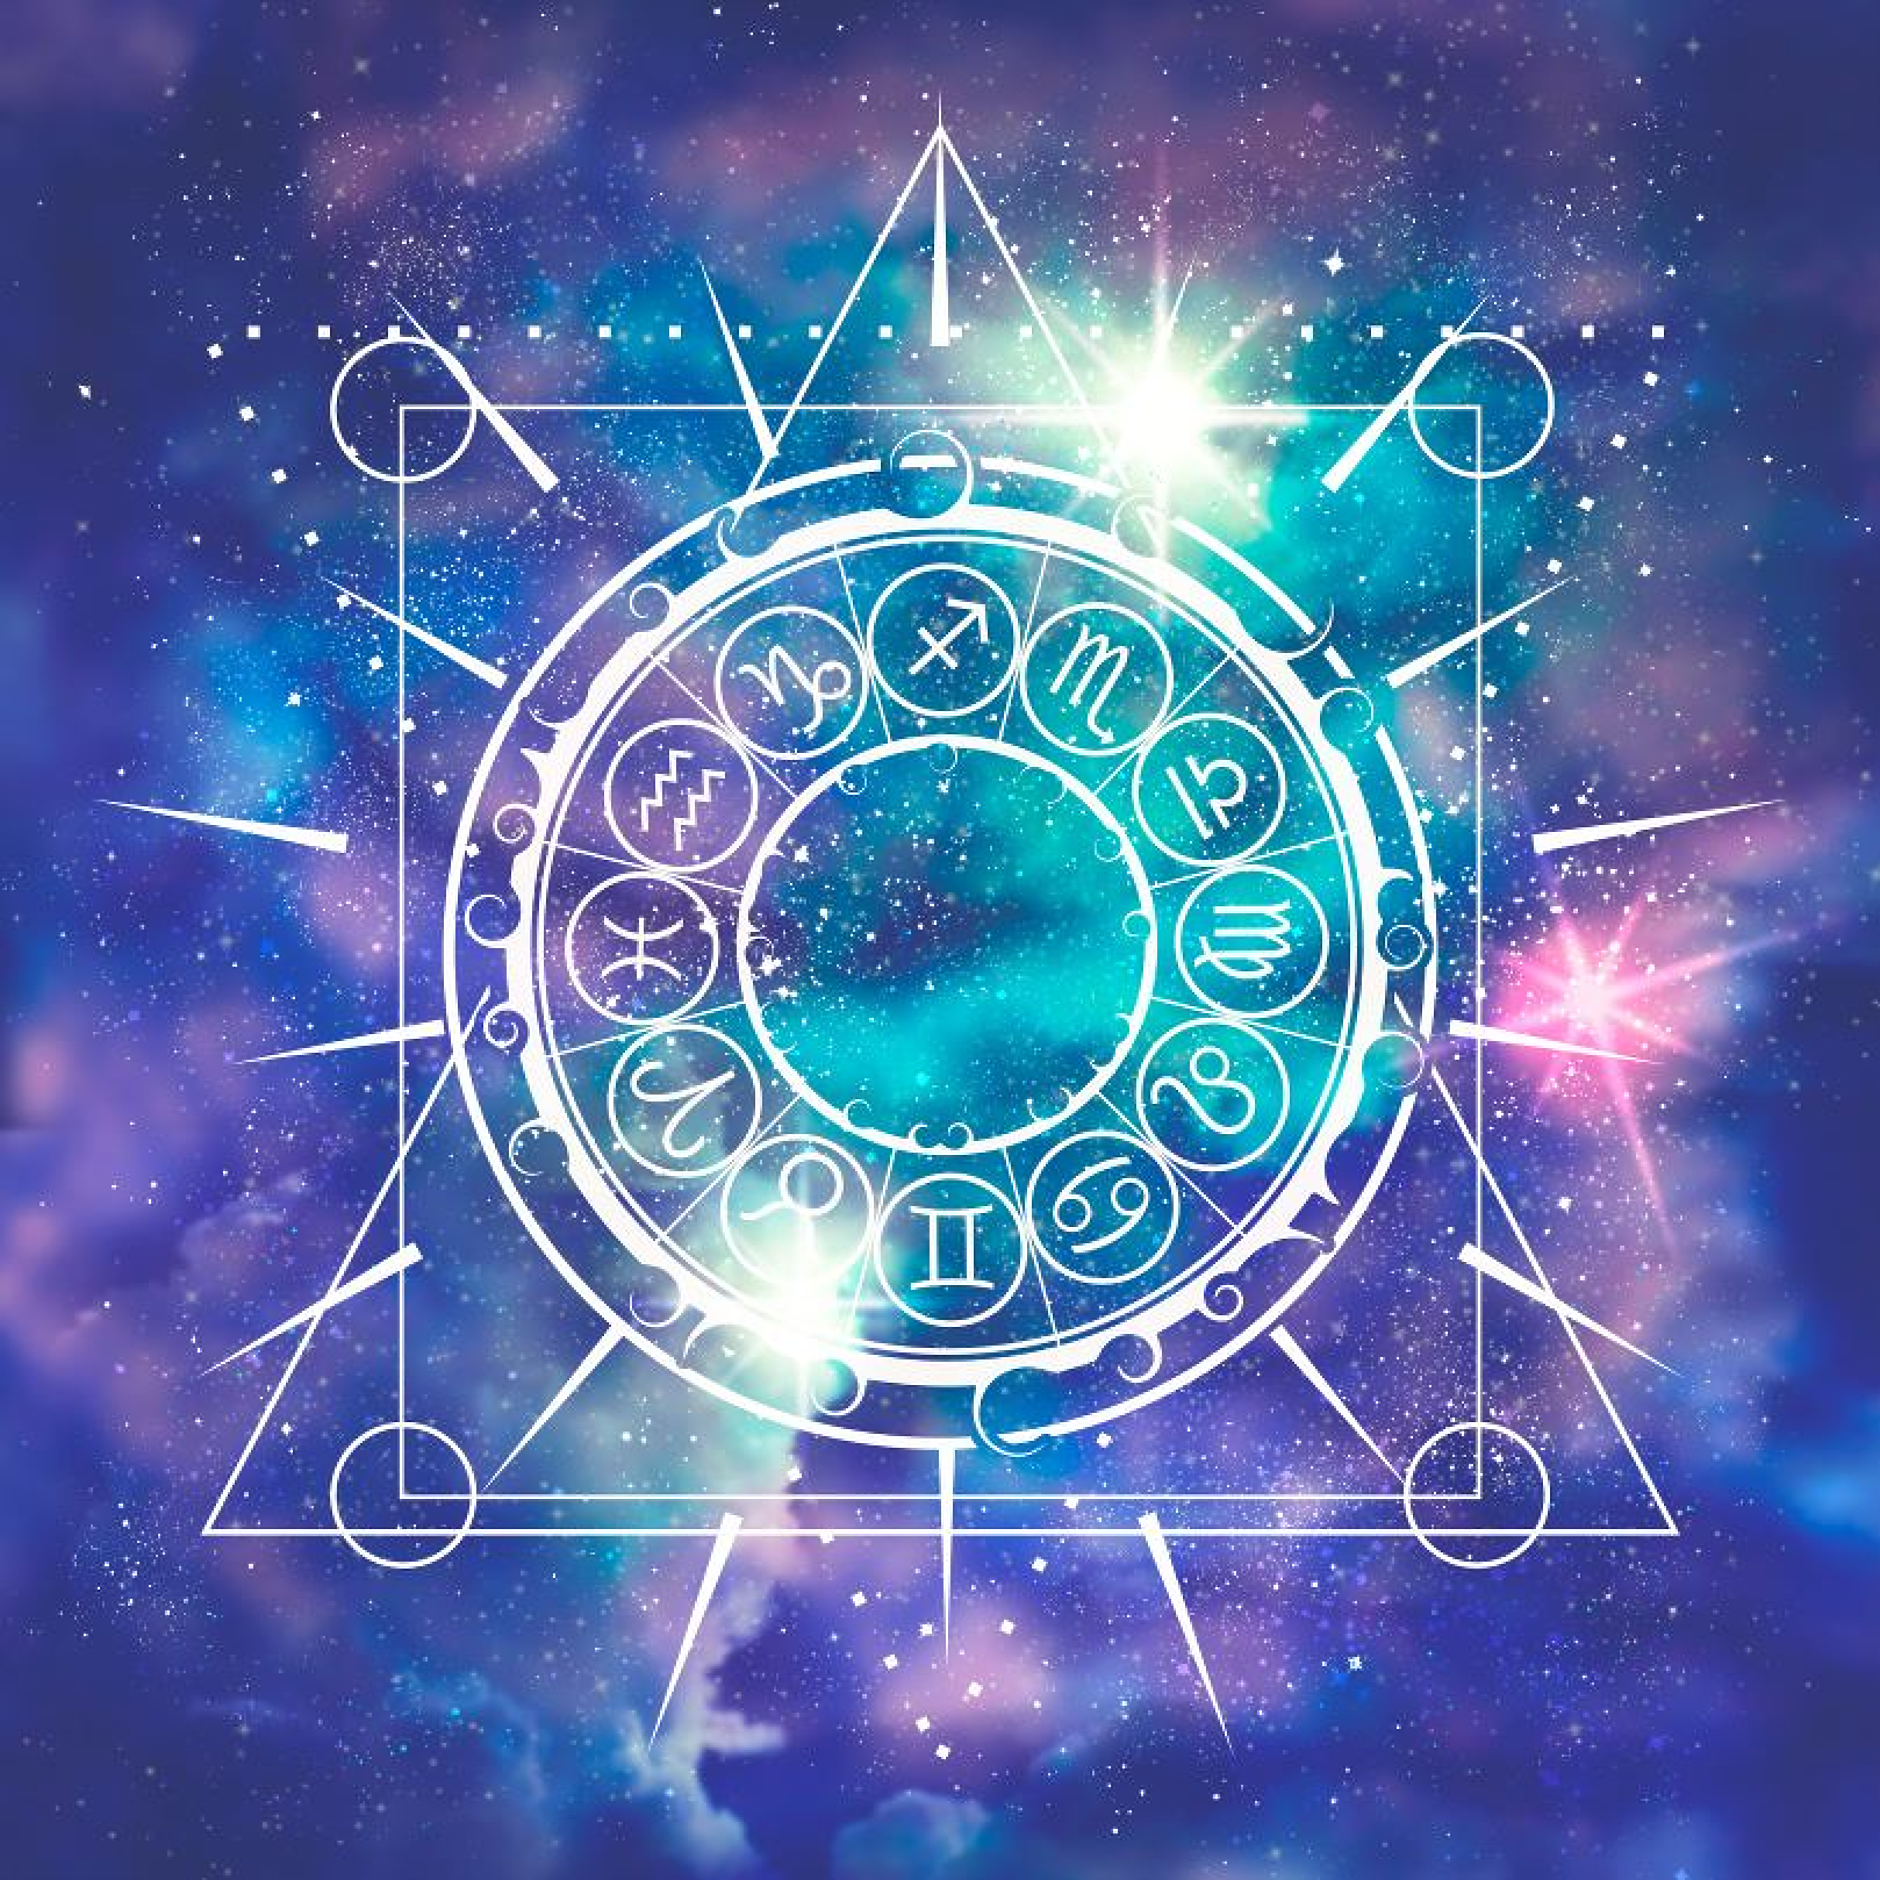 Седмичен хороскоп: Звездите за бизнеса от 8 до 14 април